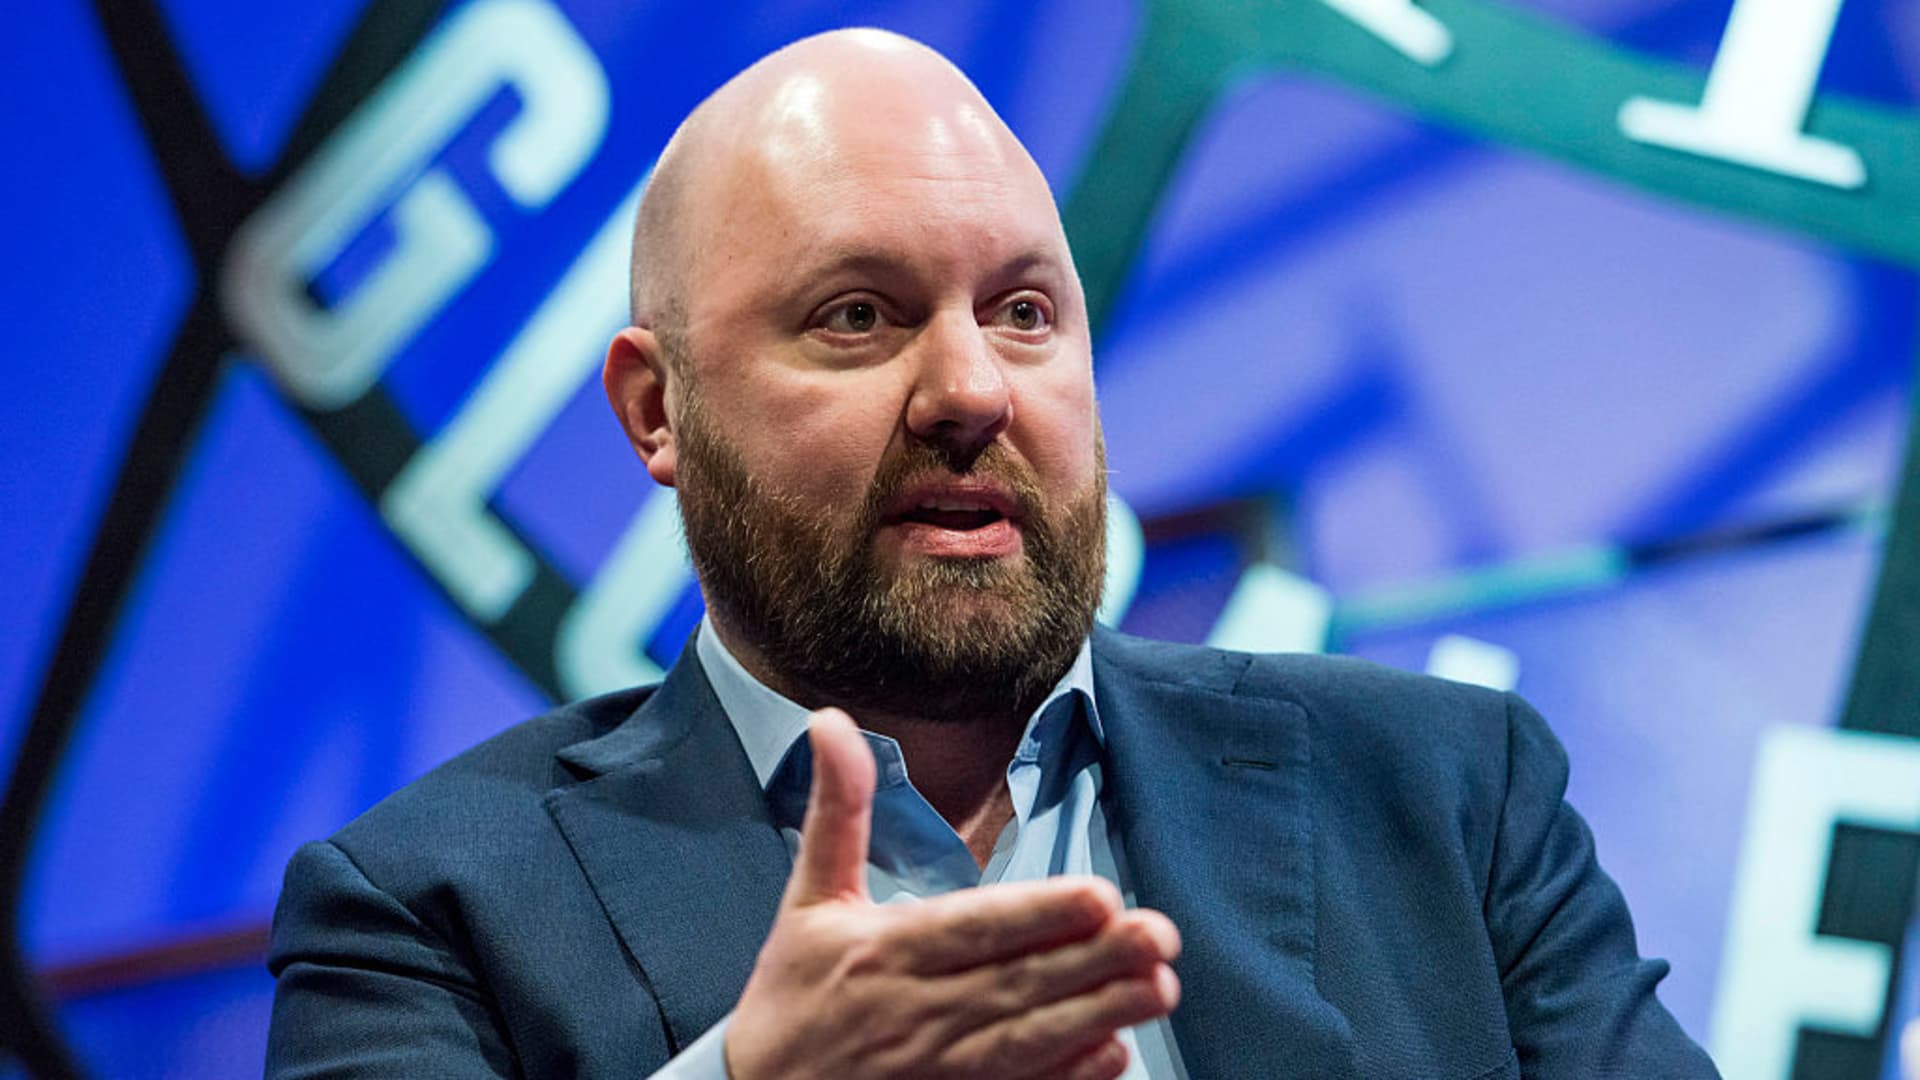 Marc Andreessen, co-founder and general partner of Andreessen Horowitz